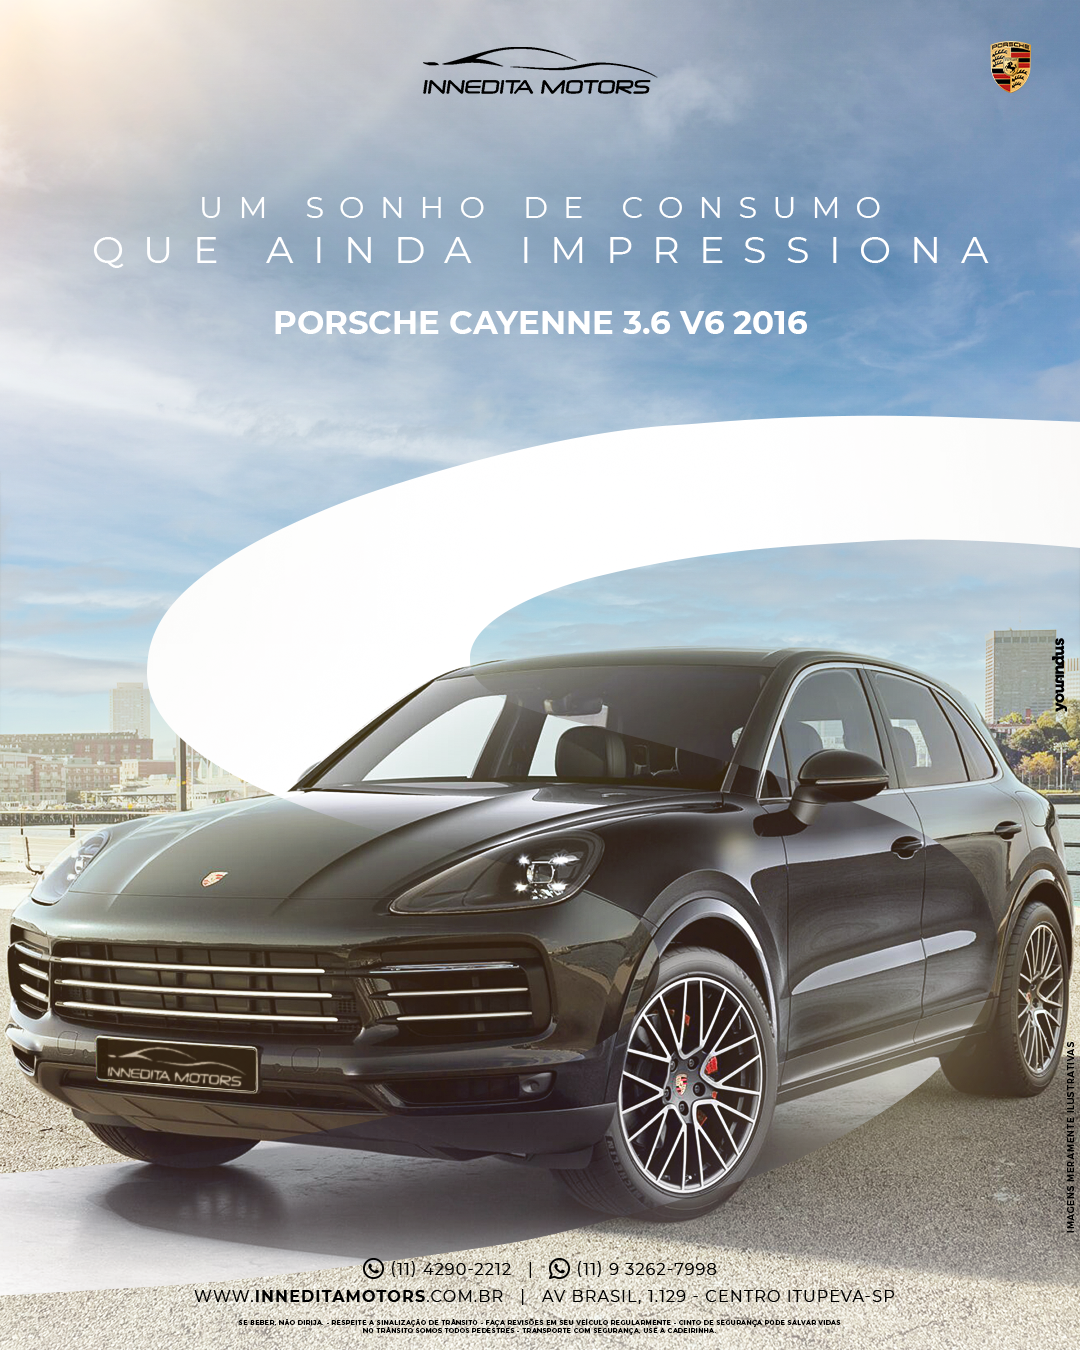 Porsche Cayenne 2016: Um Esportivo Luxuoso